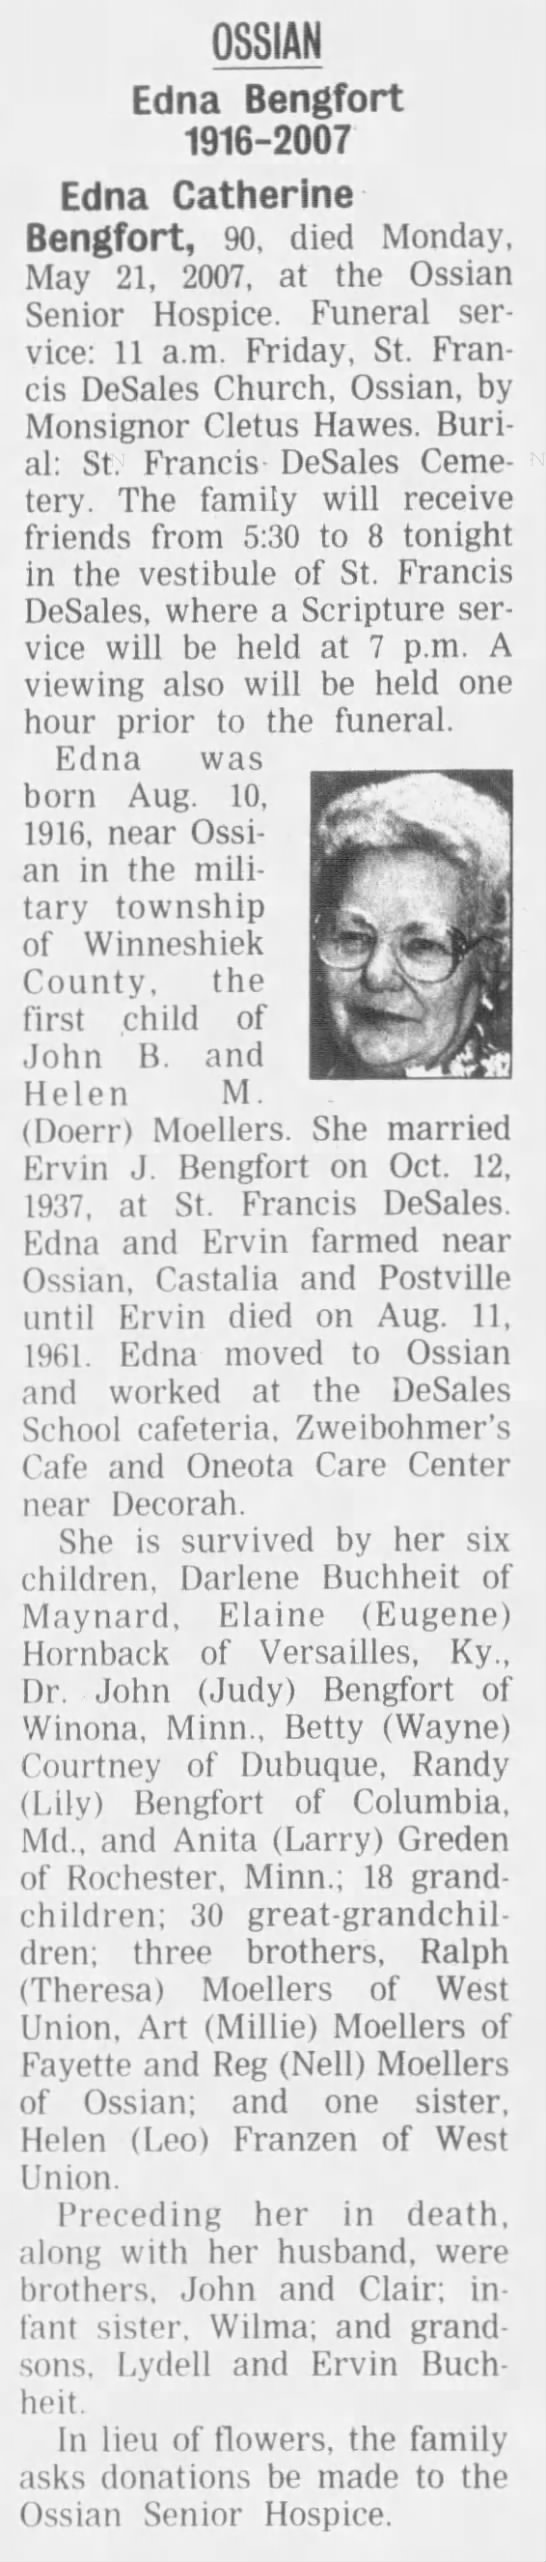 Obituary for Edna Catherine OSSIAN Bengfort - 